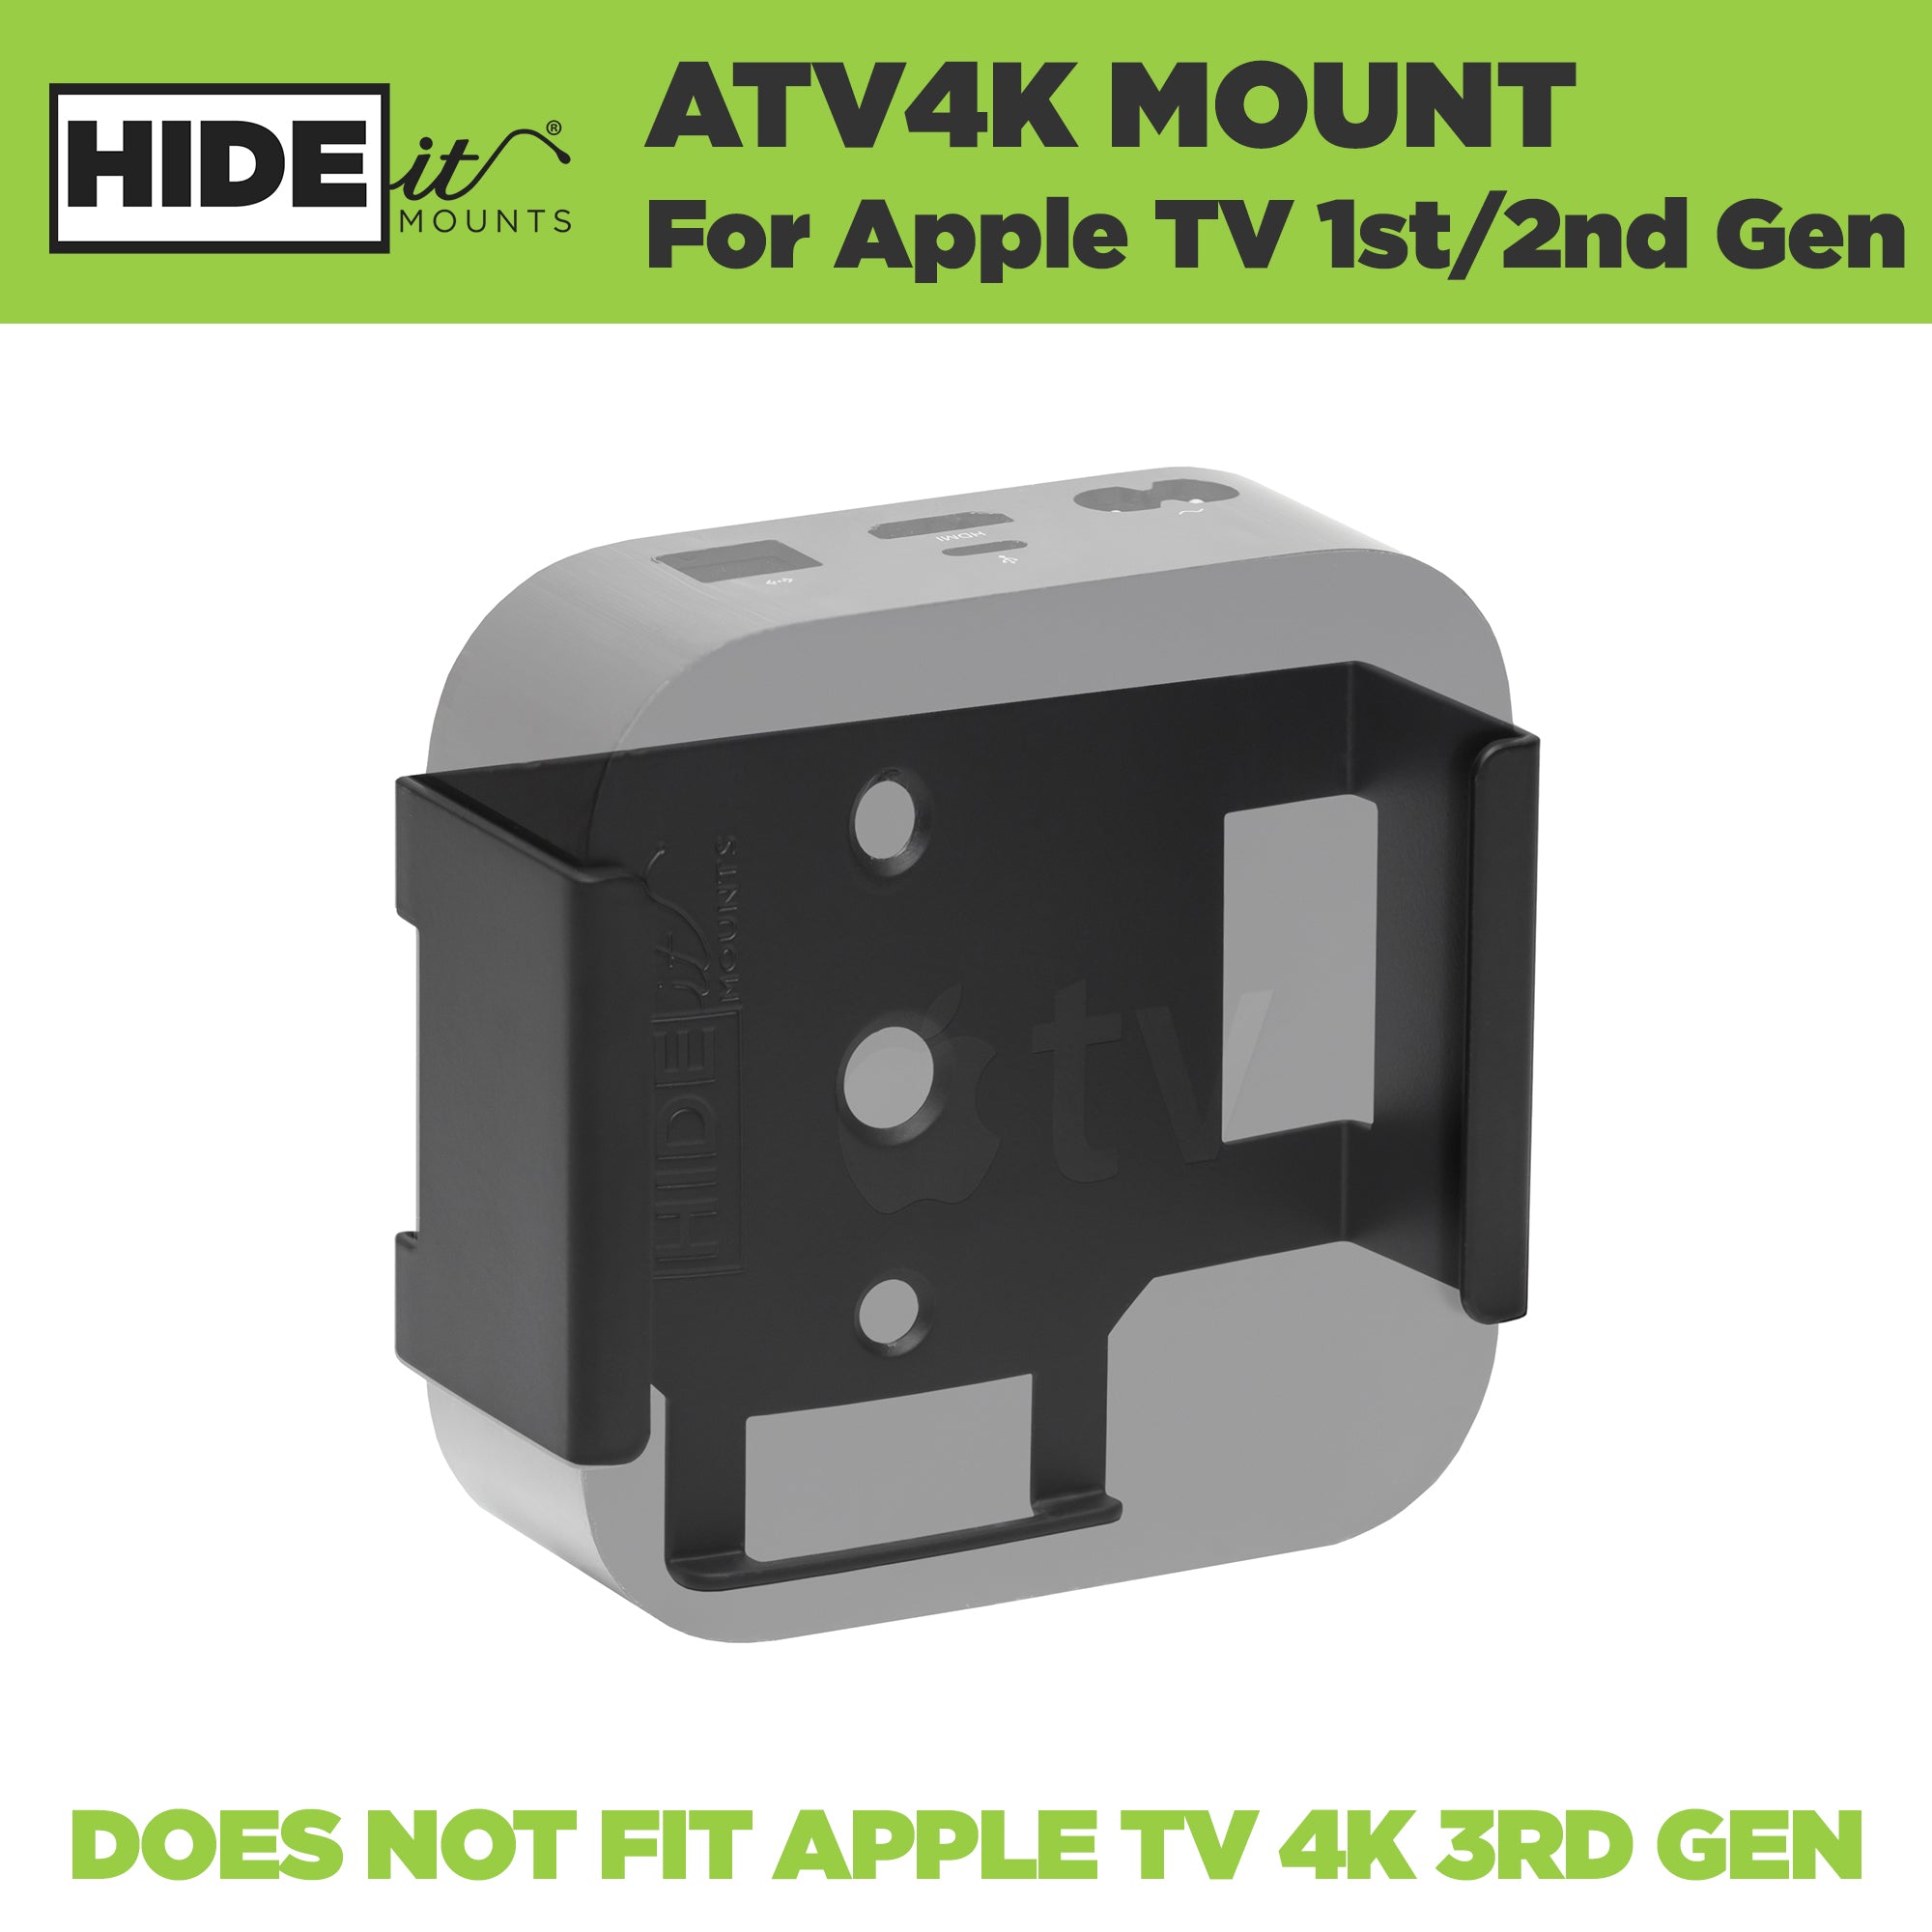 Steel Apple TV 4k wall mount made by HIDEit Mounts.